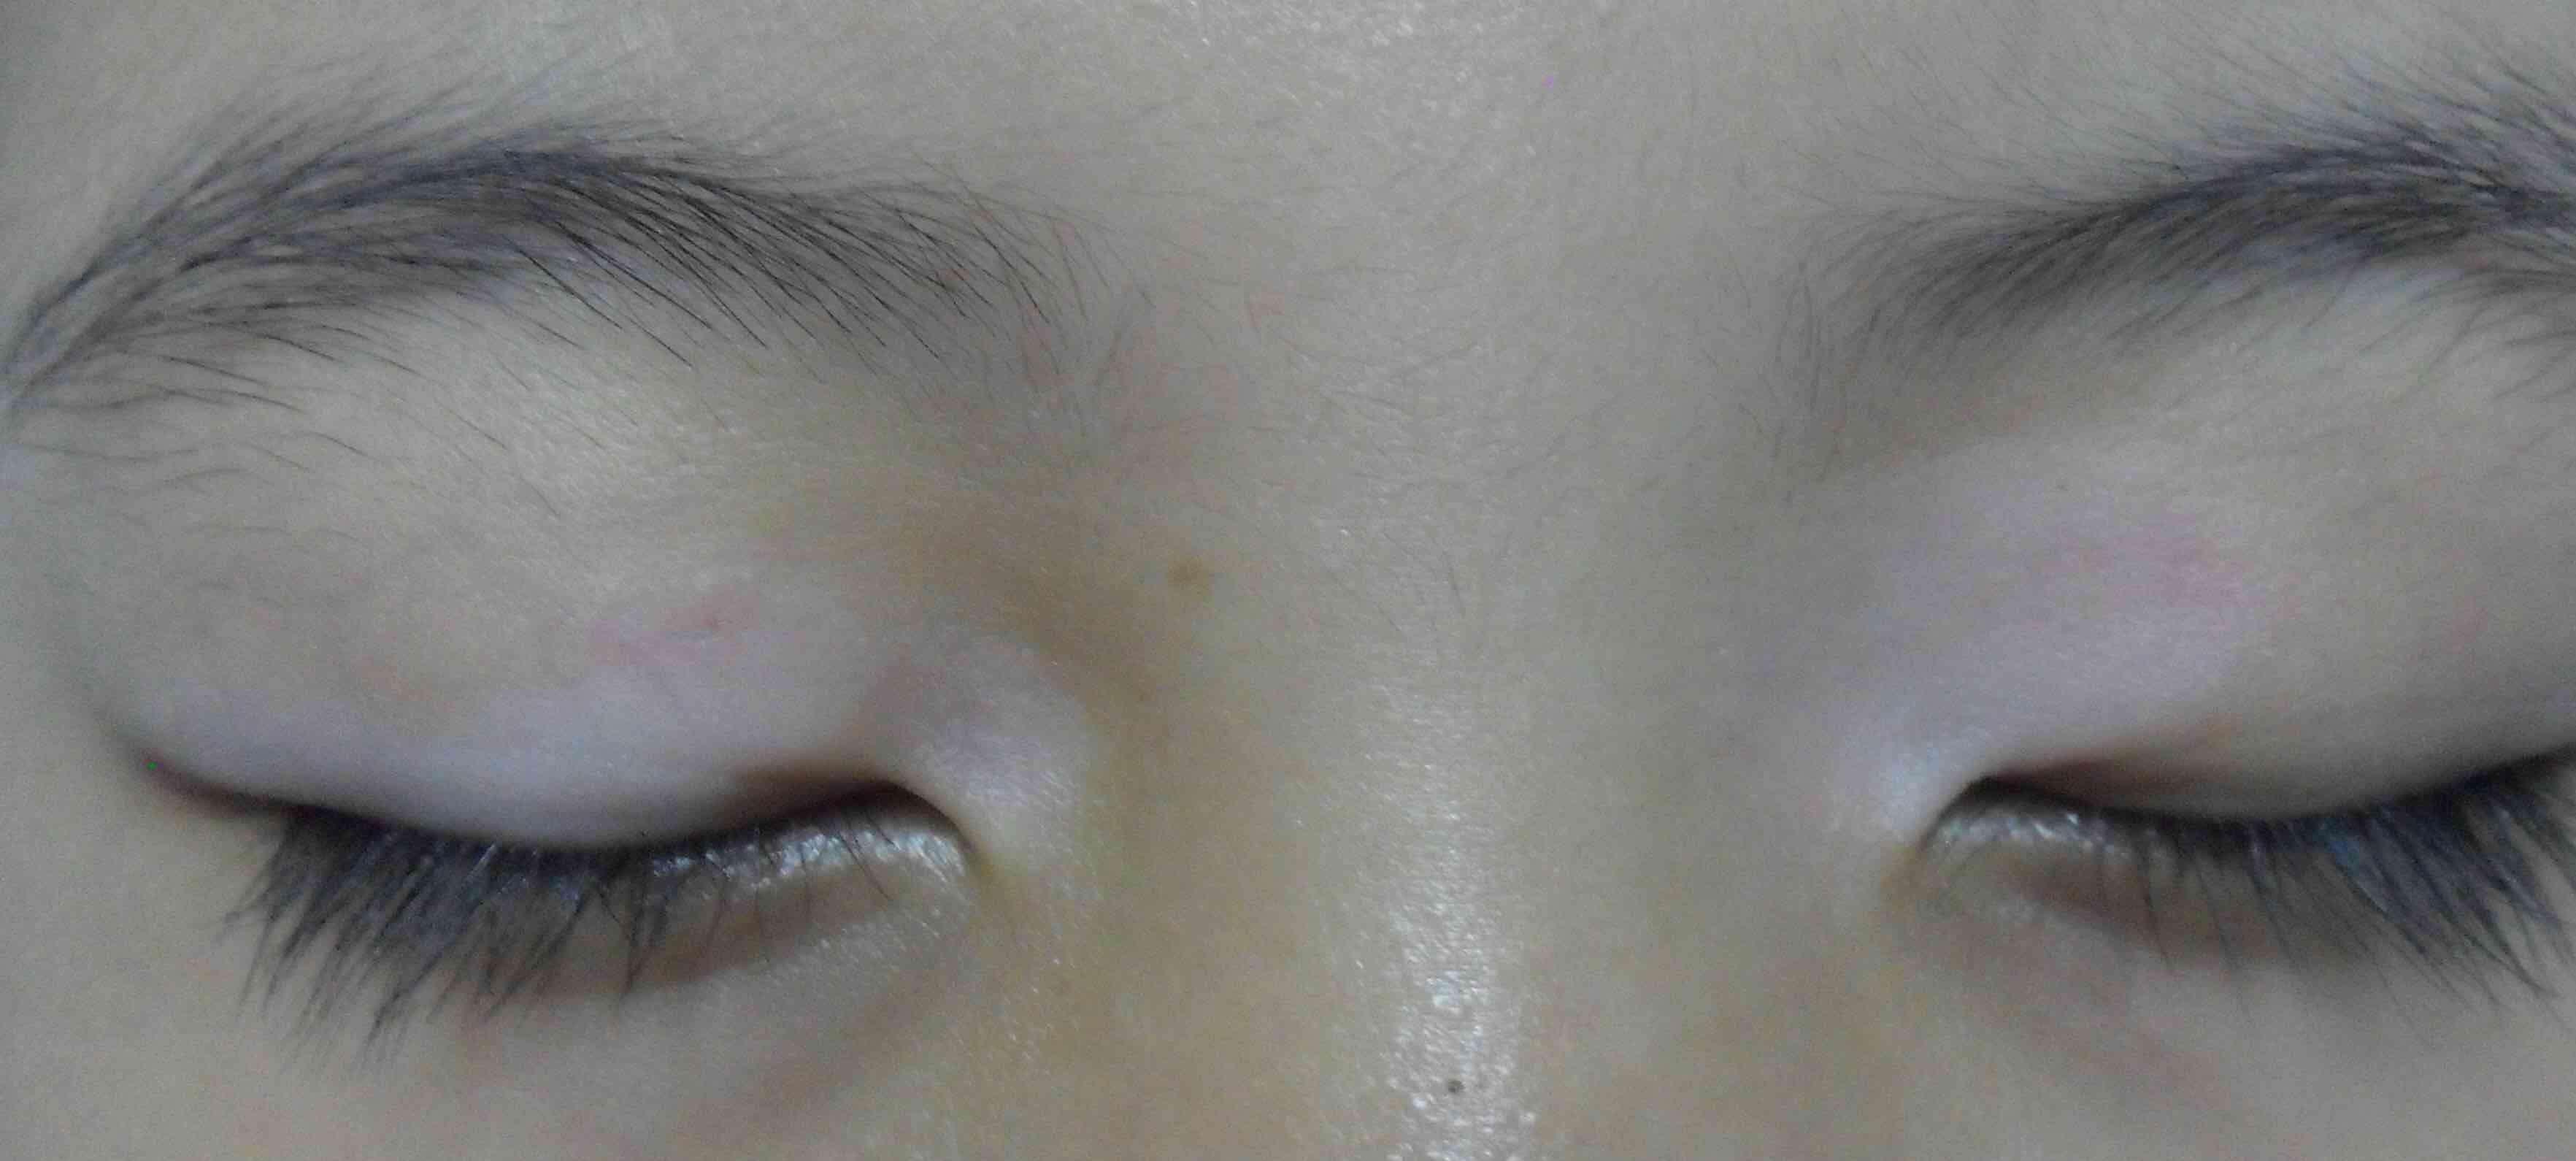 眼睑部白癜风2月余眼睑白斑wood灯检查: 皮损颜色呈白色治疗3个月